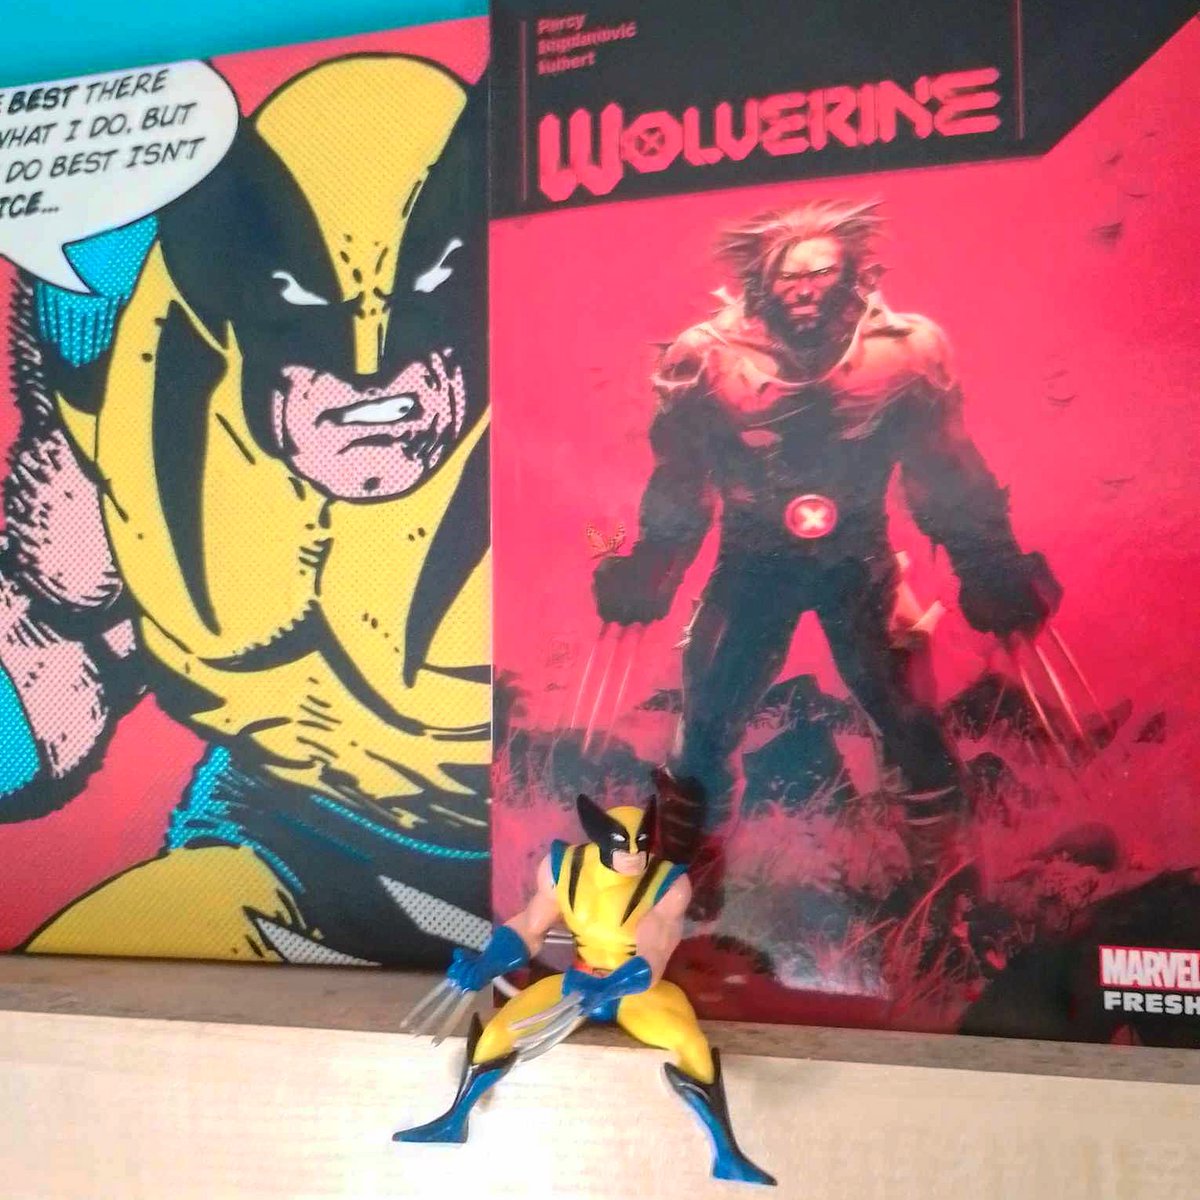 #ŚwitX #Wolverine to świetny #kryminał grozy

#współpracarecenzencka, za #komiks dziękujemy #Egmont

ostatniatawerna.pl/logan-lowca-wa…

#xmen #marvelcomics #weaponx #superhero #logan #superbohaterowie #xforce #wampiry #vampires #homosuperior✖️ #czytanie #komiksy #fantastyka